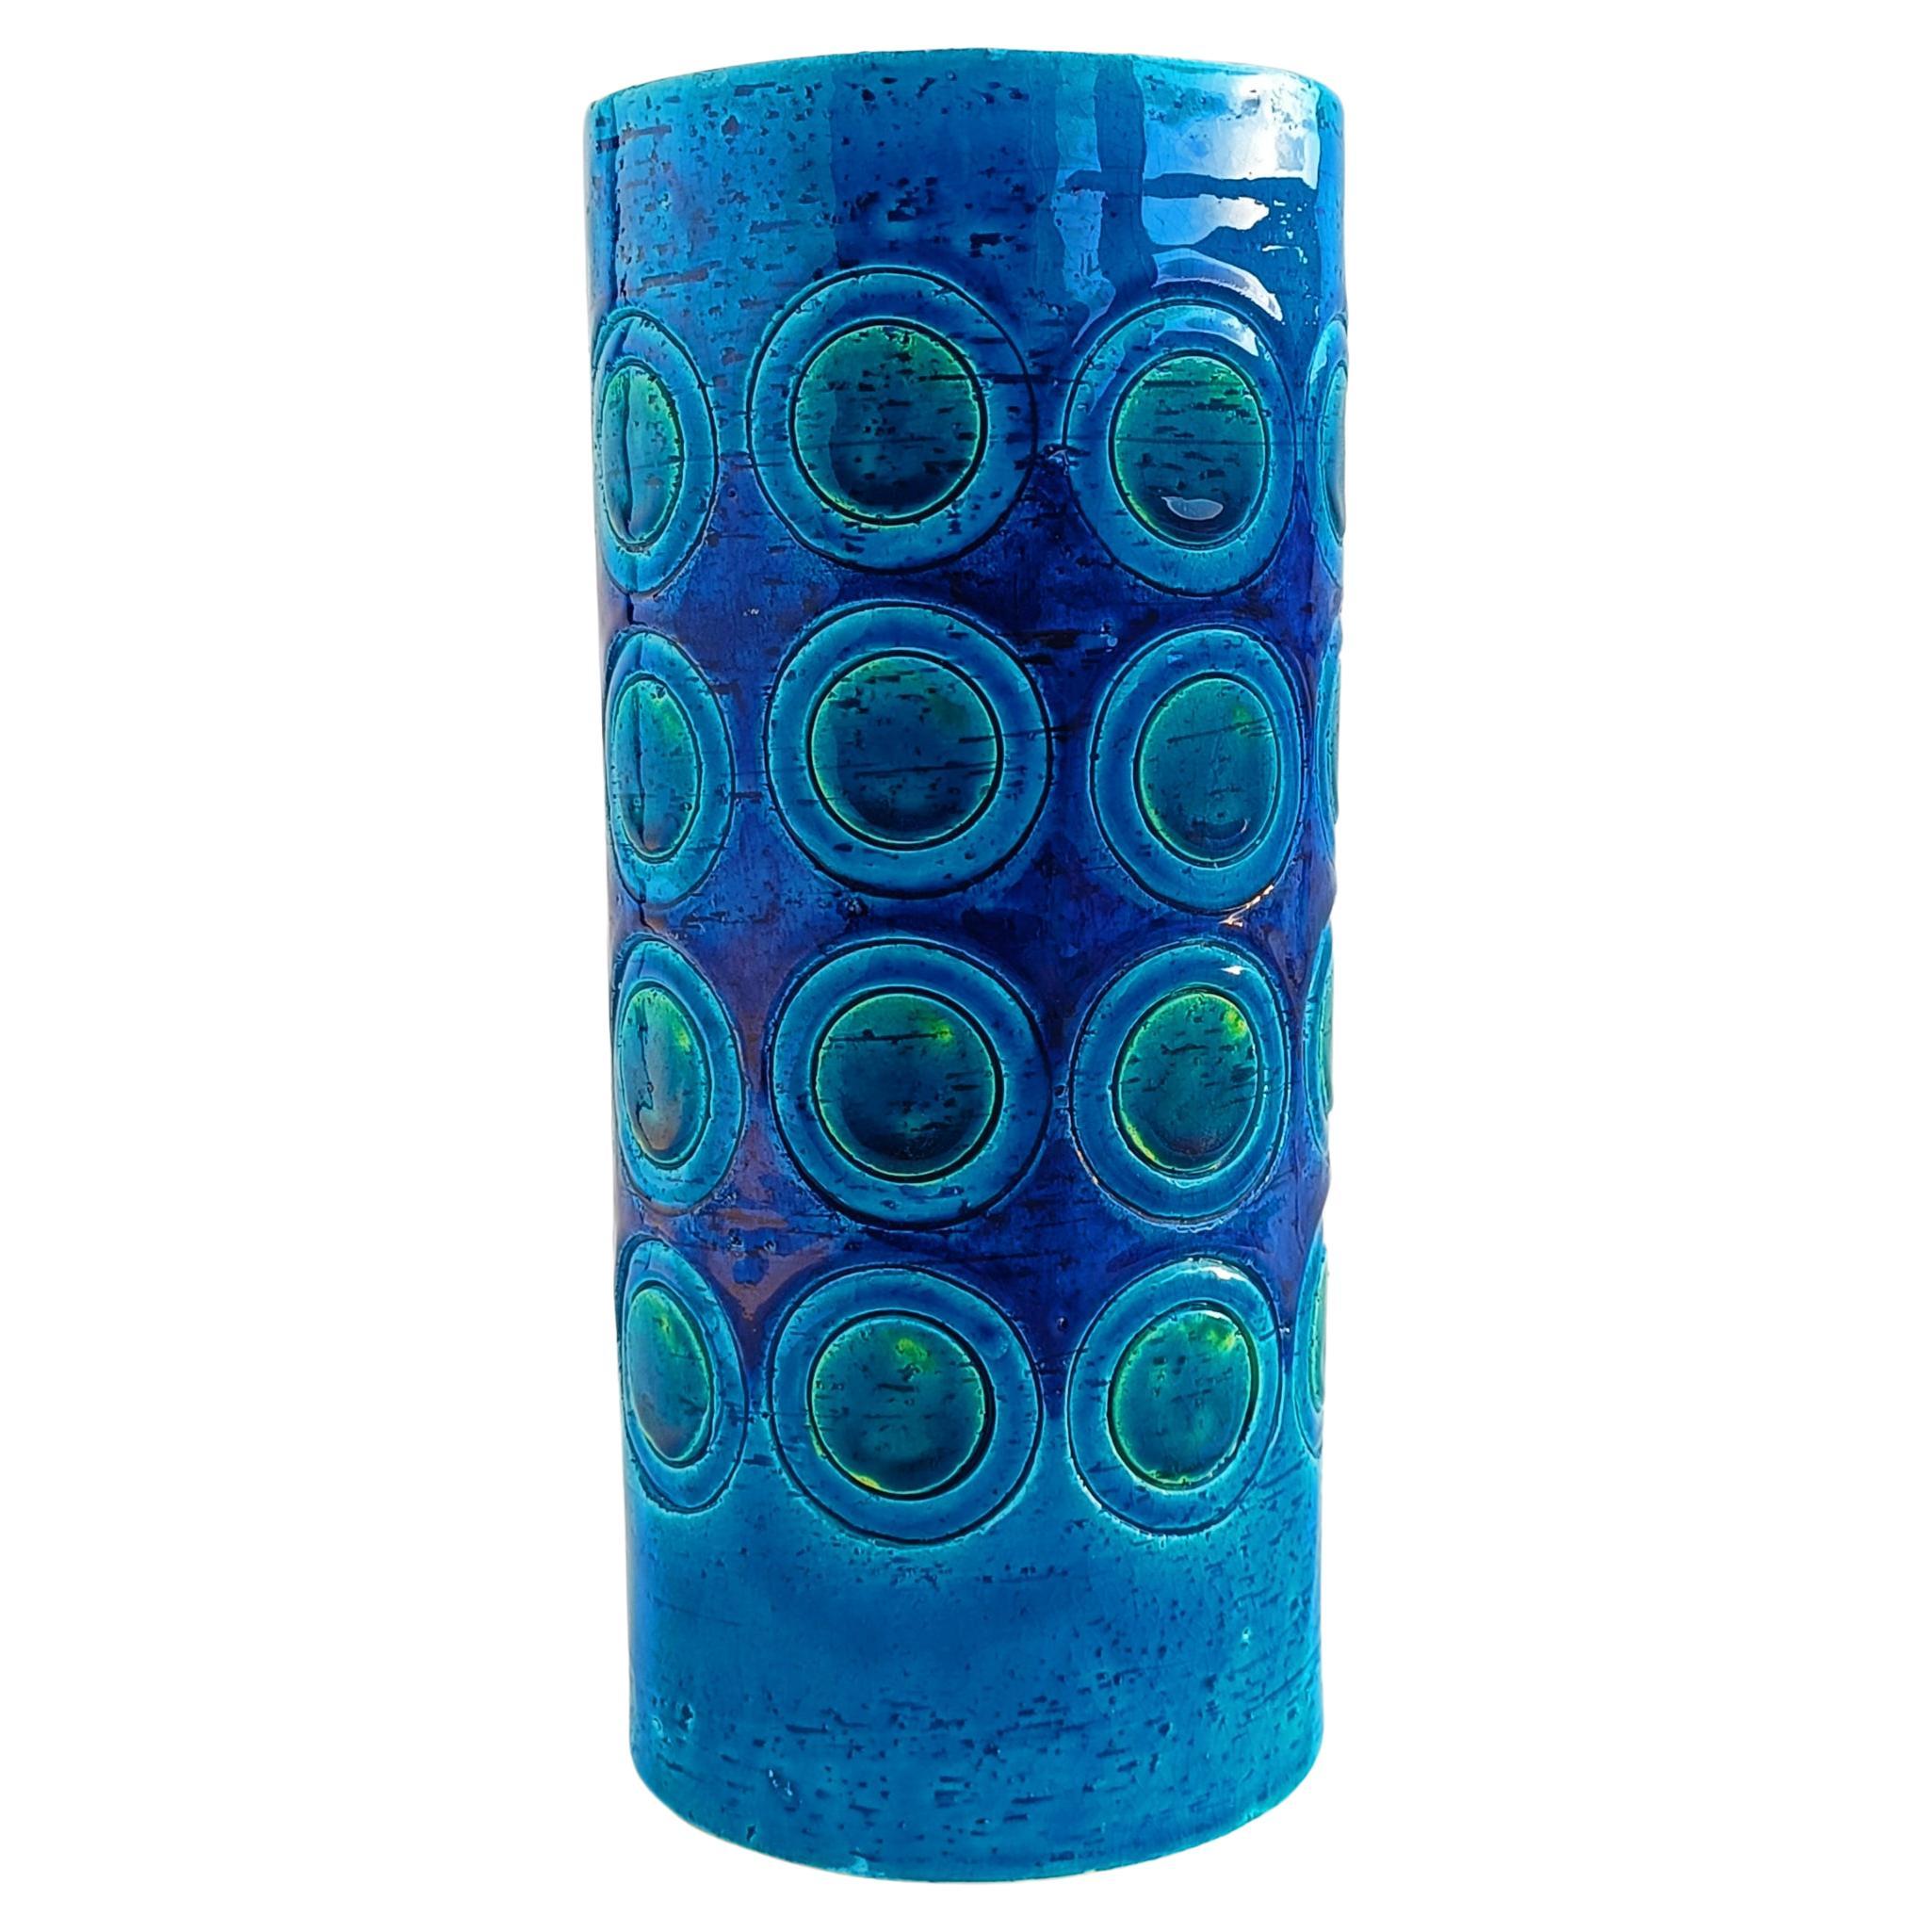 Bitossi by Aldo Londi Ikano Decor Rimini Blu Ceramic Vase, Italy, 1960s